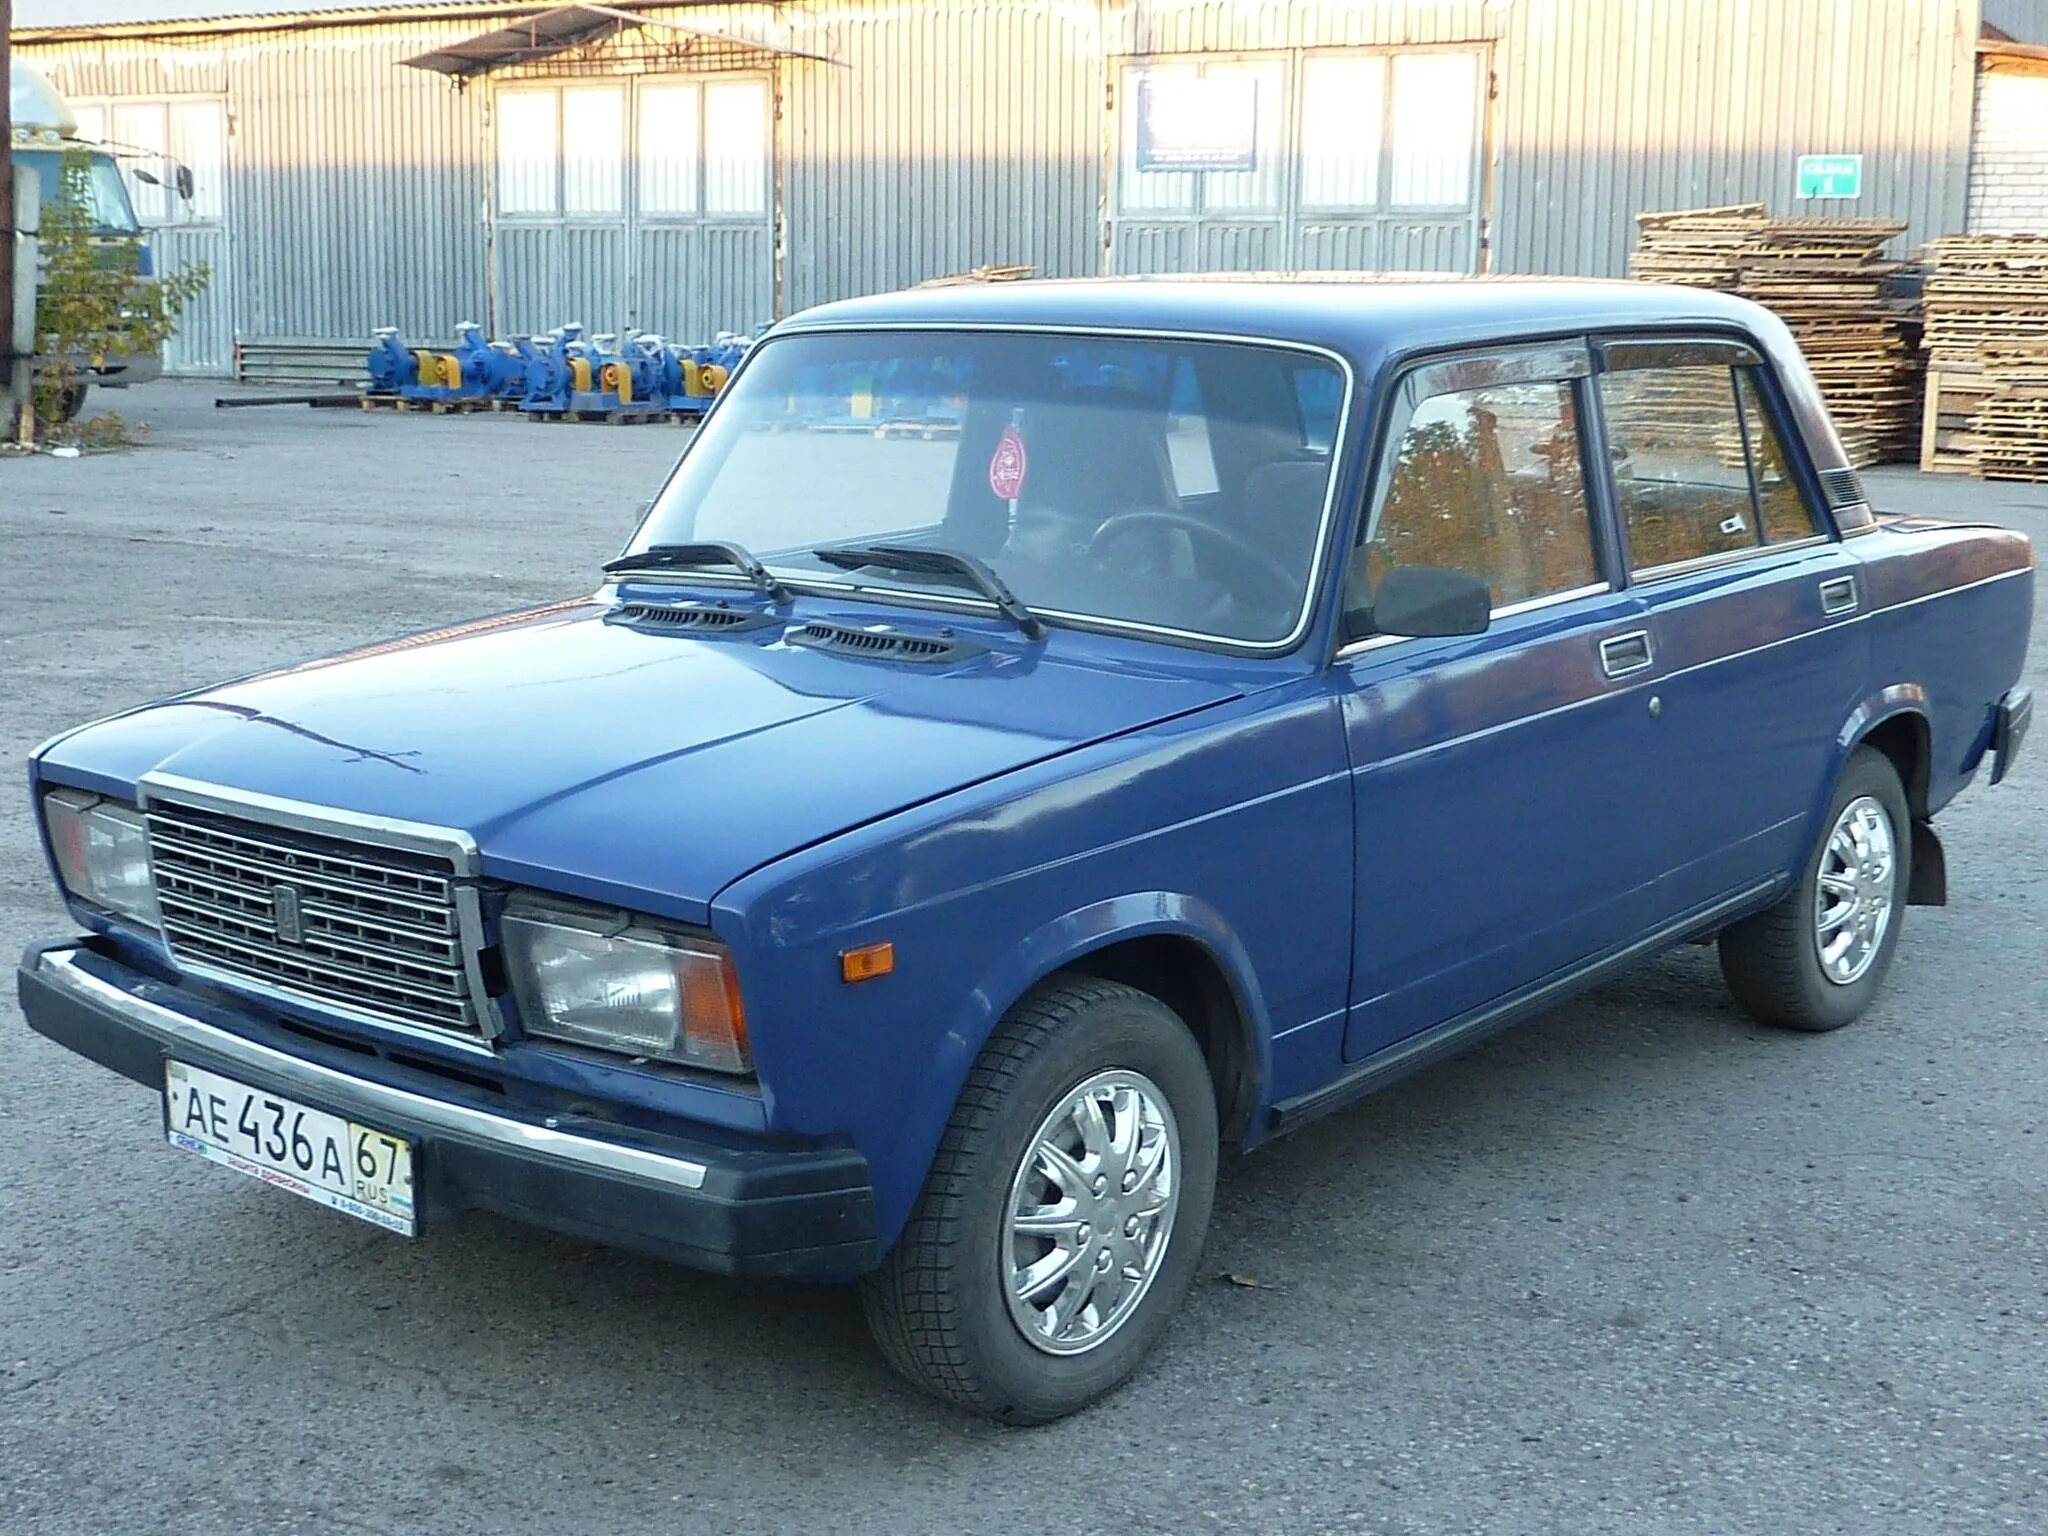 Семерка ваз 2107. ВАЗ-2107 «Жигули». Семёрка ВАЗ 2107 голубая. Ваз2107 компакт-кар.